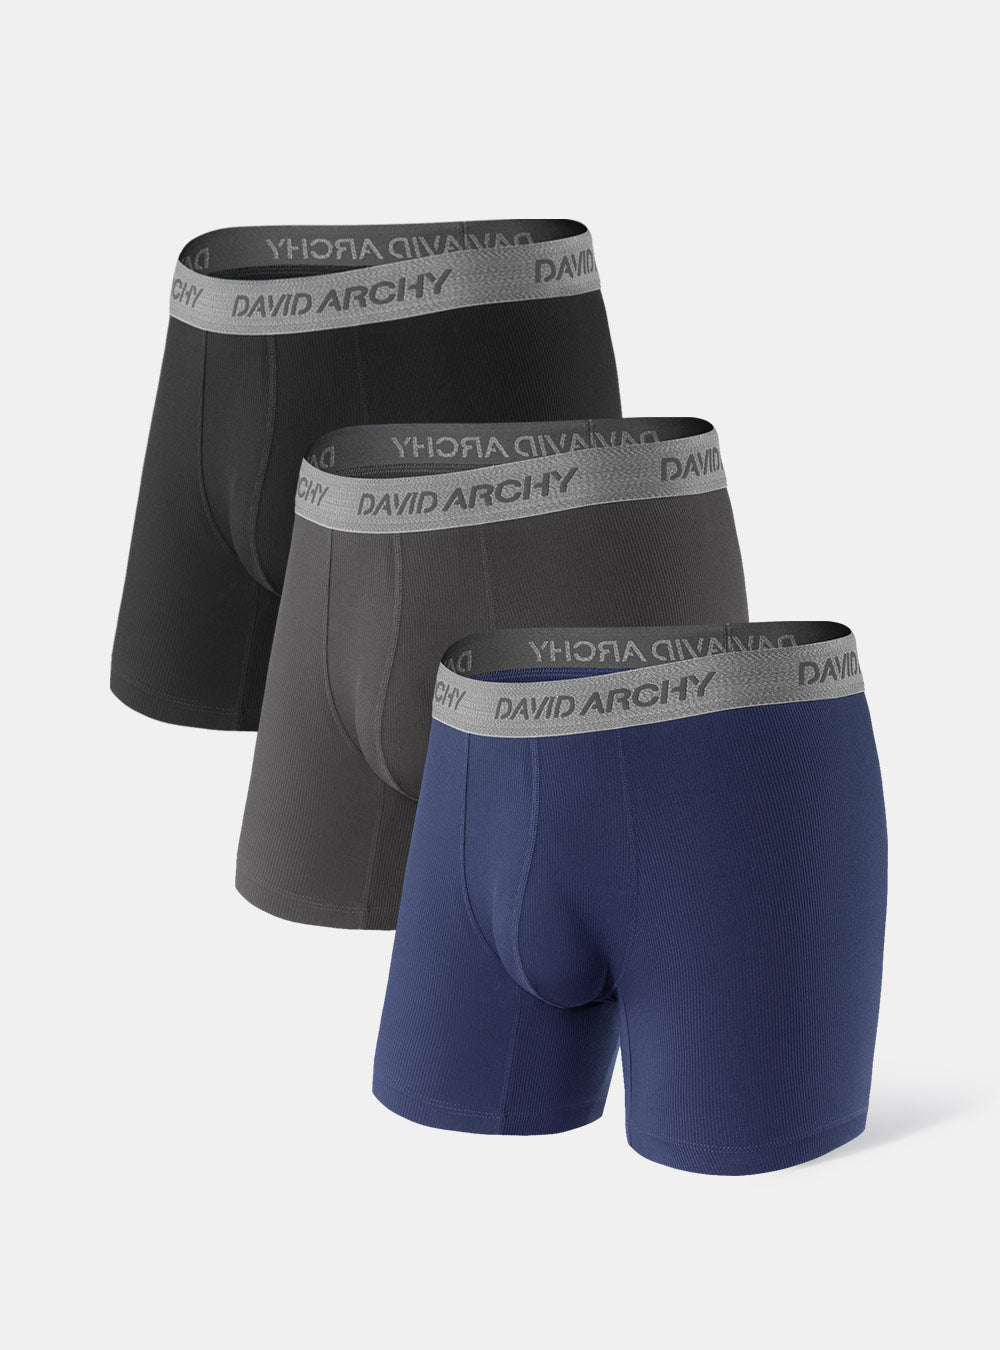 David Archy 3 Packs Boxer Briefs Cool Silky 3D Pouch Lightweight 3D Contour  Pouc